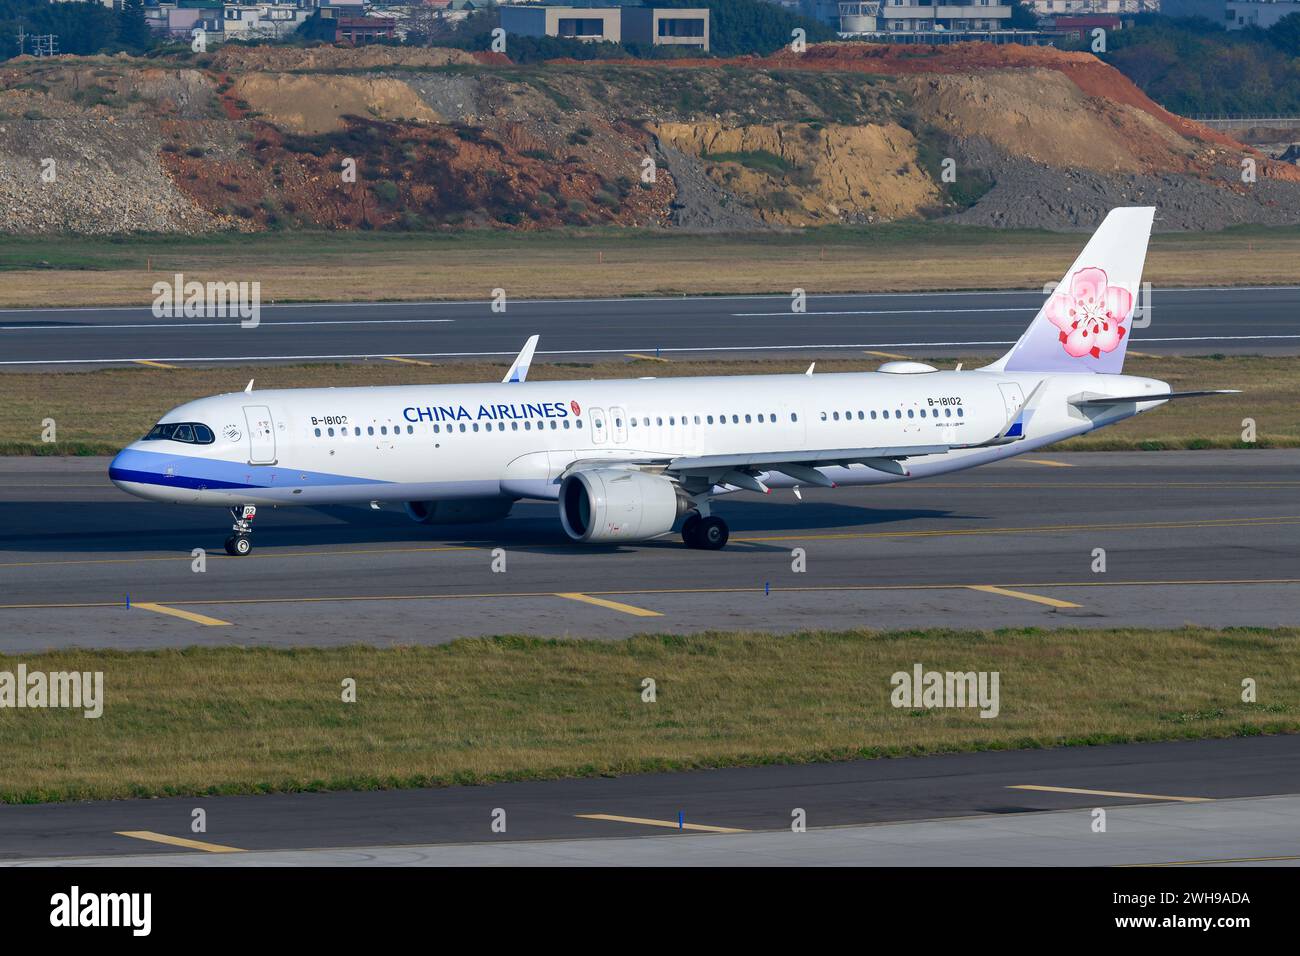 Airbus A321neo de China Airlines au sol. Avion A321 de China Airlines. Banque D'Images